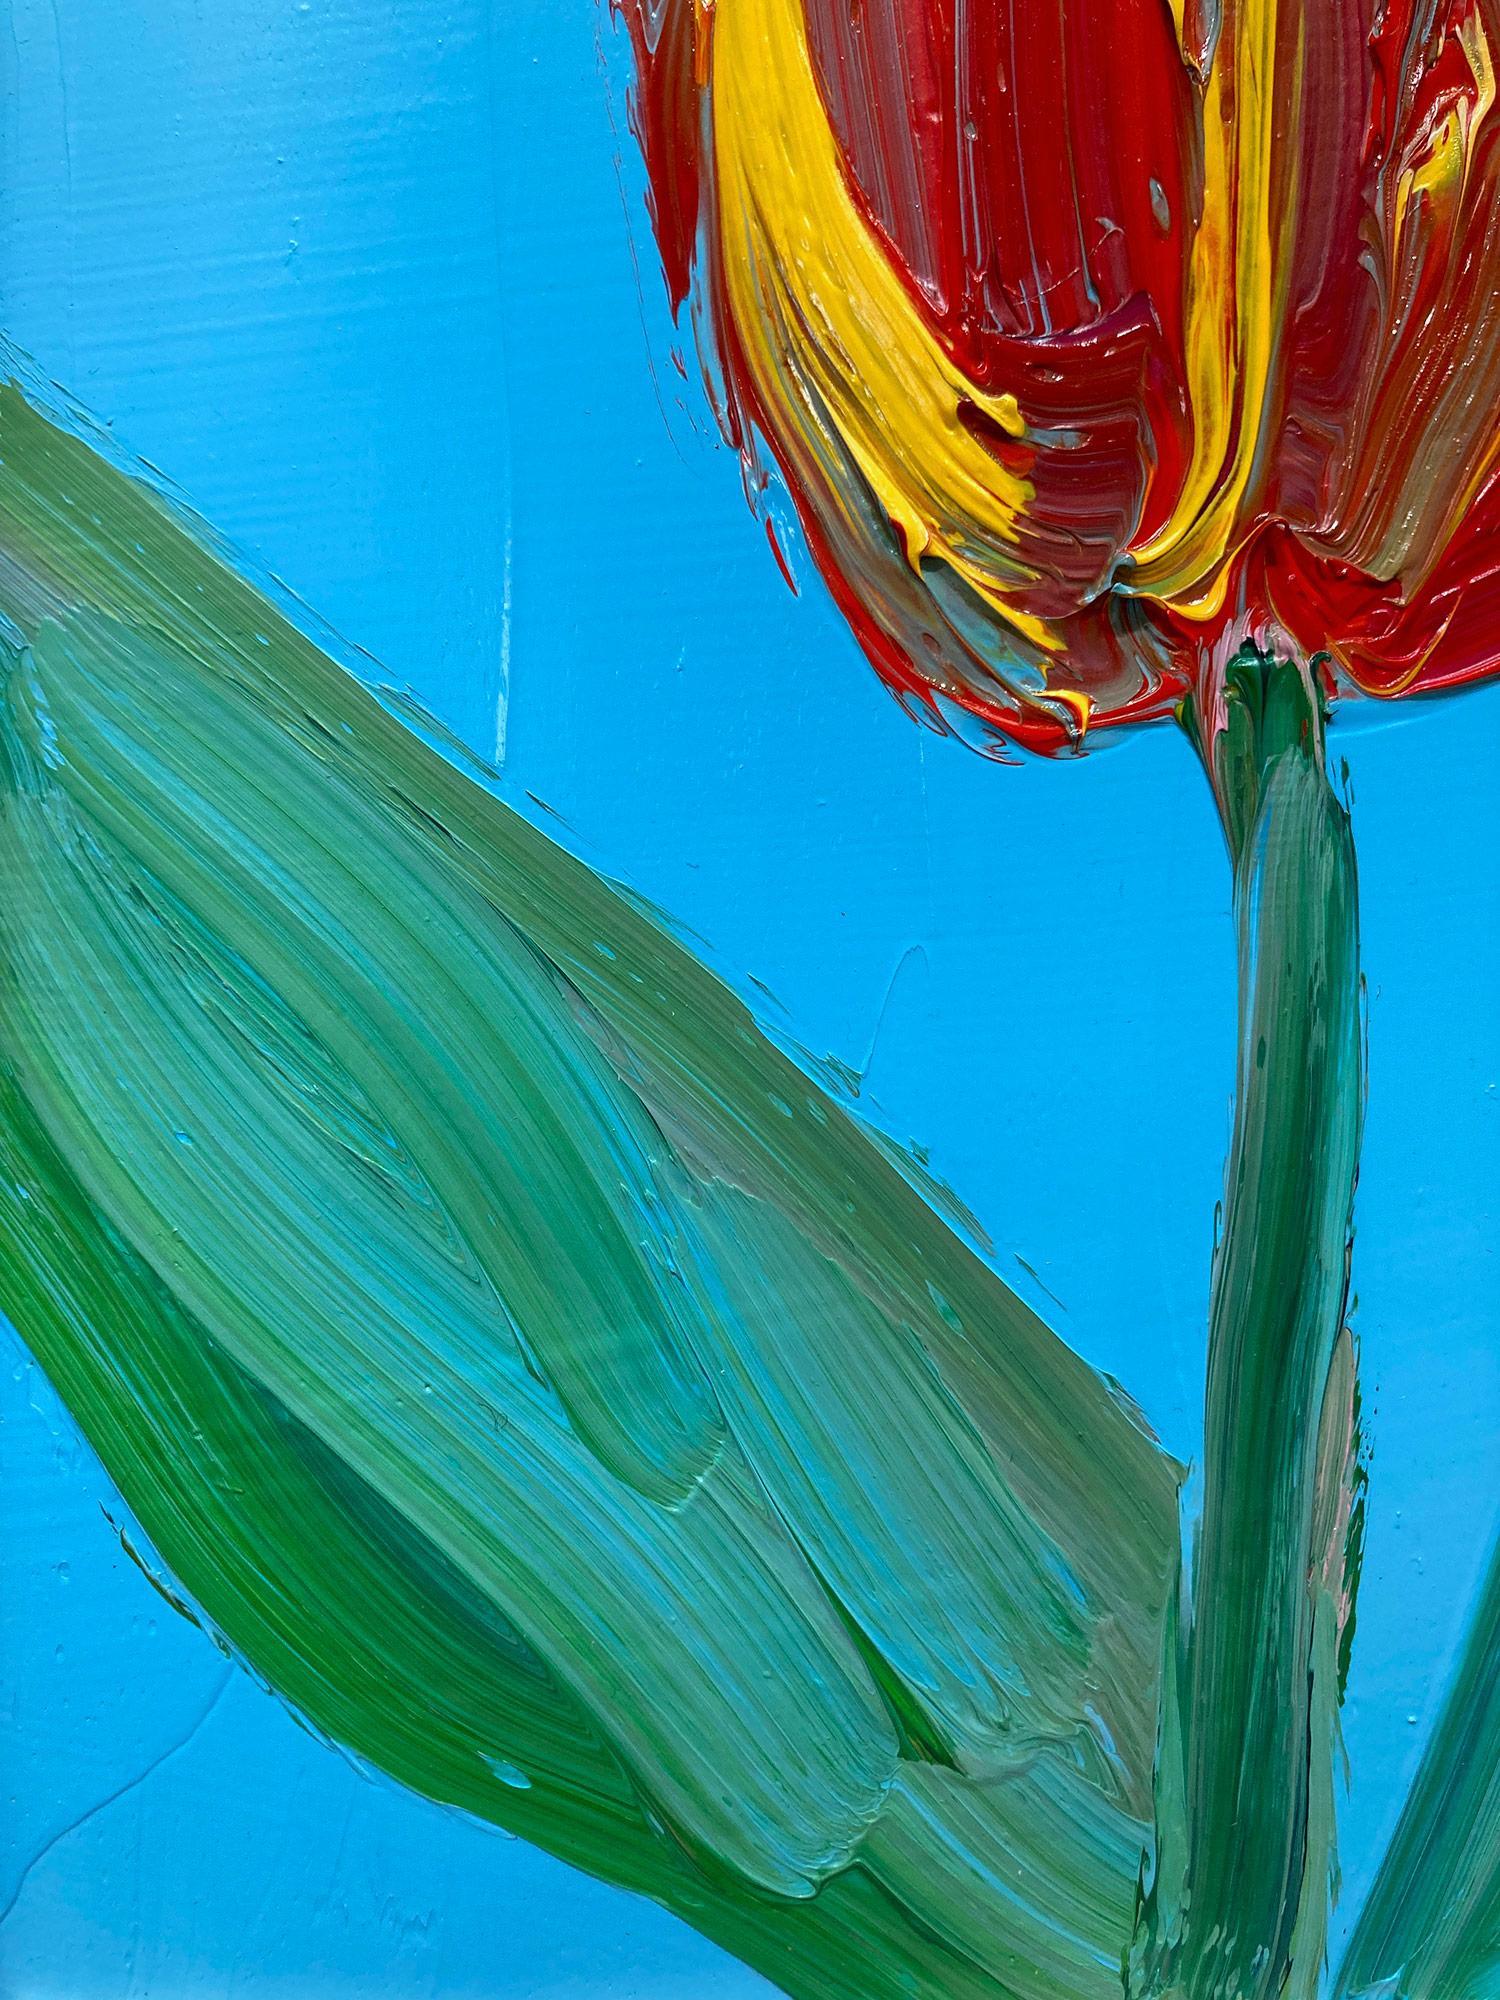 Eine wunderbare Komposition aus einer der neuesten Serien von Slonem, den Tulpen. Dieses Werk zeigt die gestische Figur einer roten und gelben Tulpe auf einem azurblauen Hintergrund mit dick aufgetragener Farbe. Inspiriert von der Natur und einer